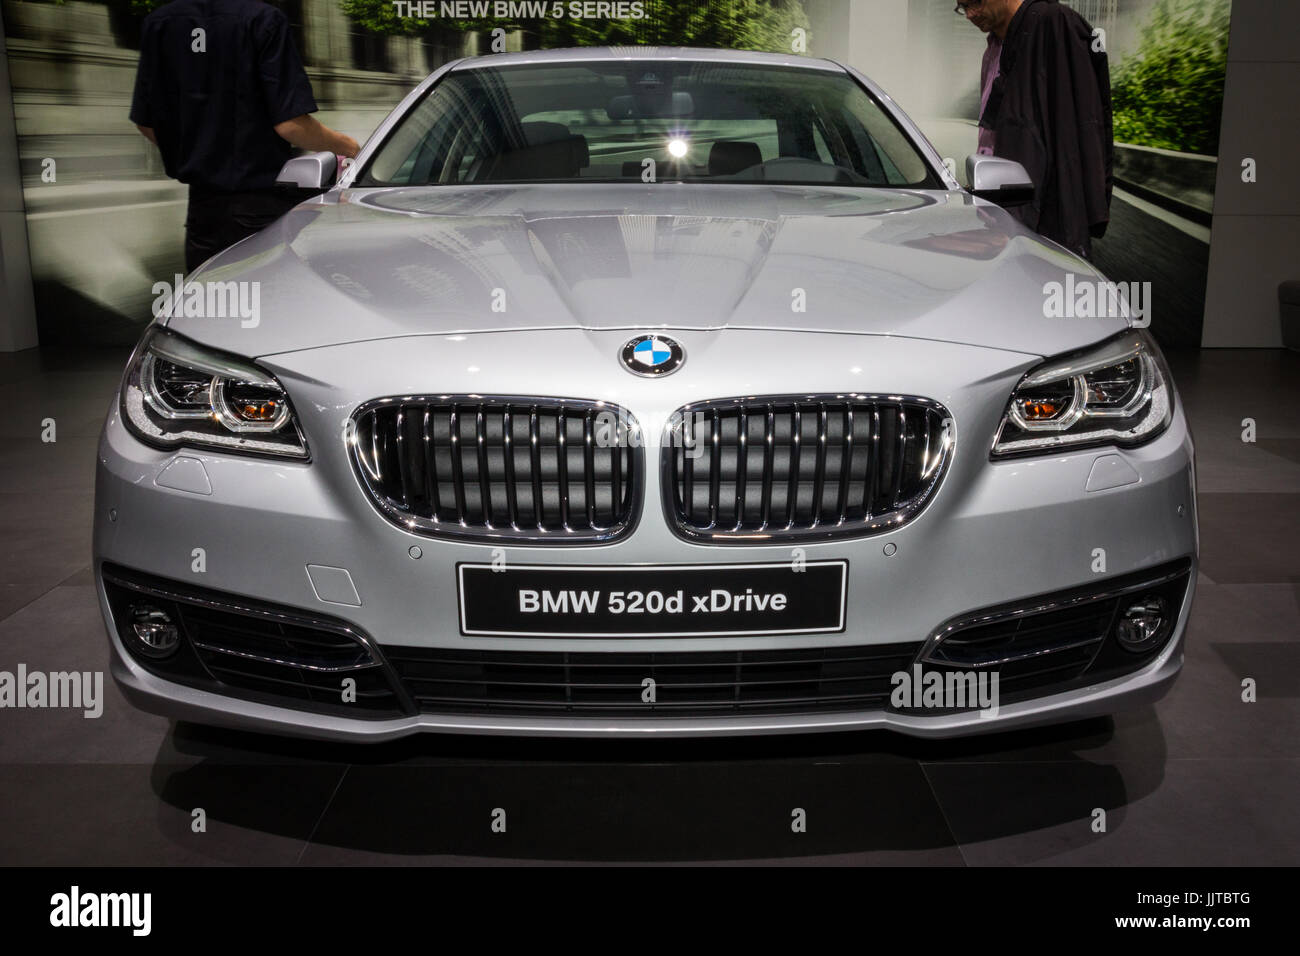 Francfort, Allemagne - Sep 13, 2013 : BMW 520d xDrive voiture à l'auto IAA de Francfort. Banque D'Images